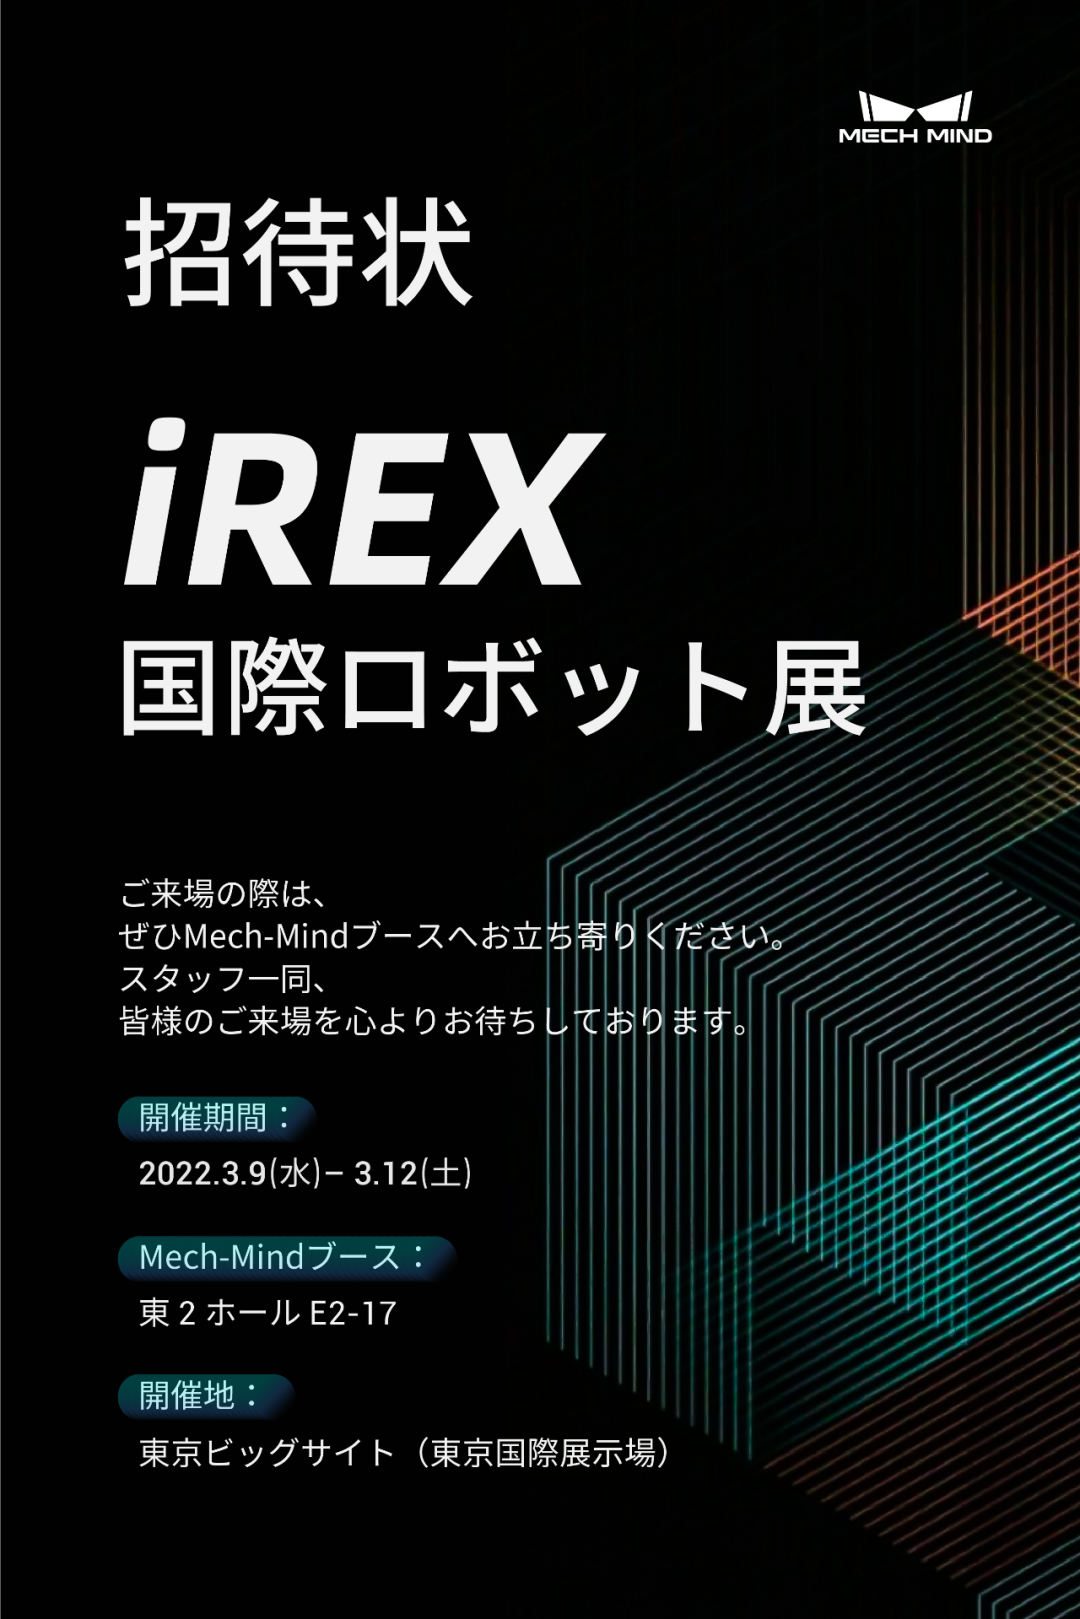 坐标东京！梅卡曼德向您发出国际机器人展览会iREX的参会邀请